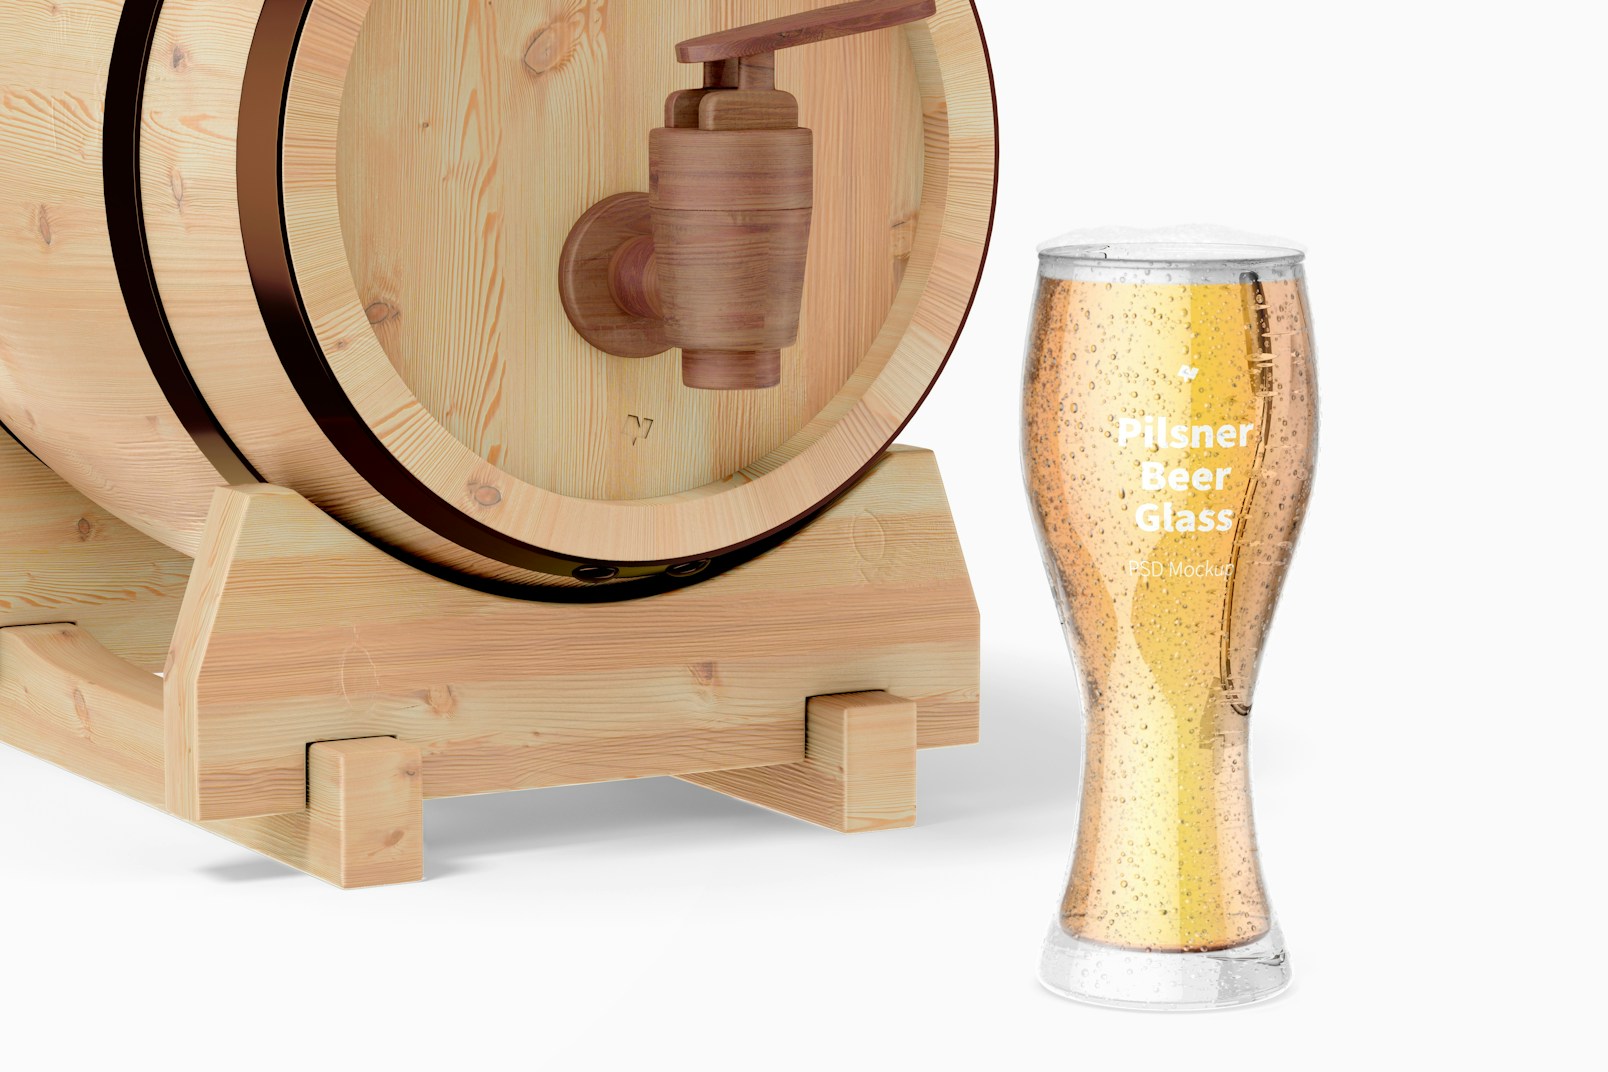 Pilsner Beer Glass with Barrel Mockup